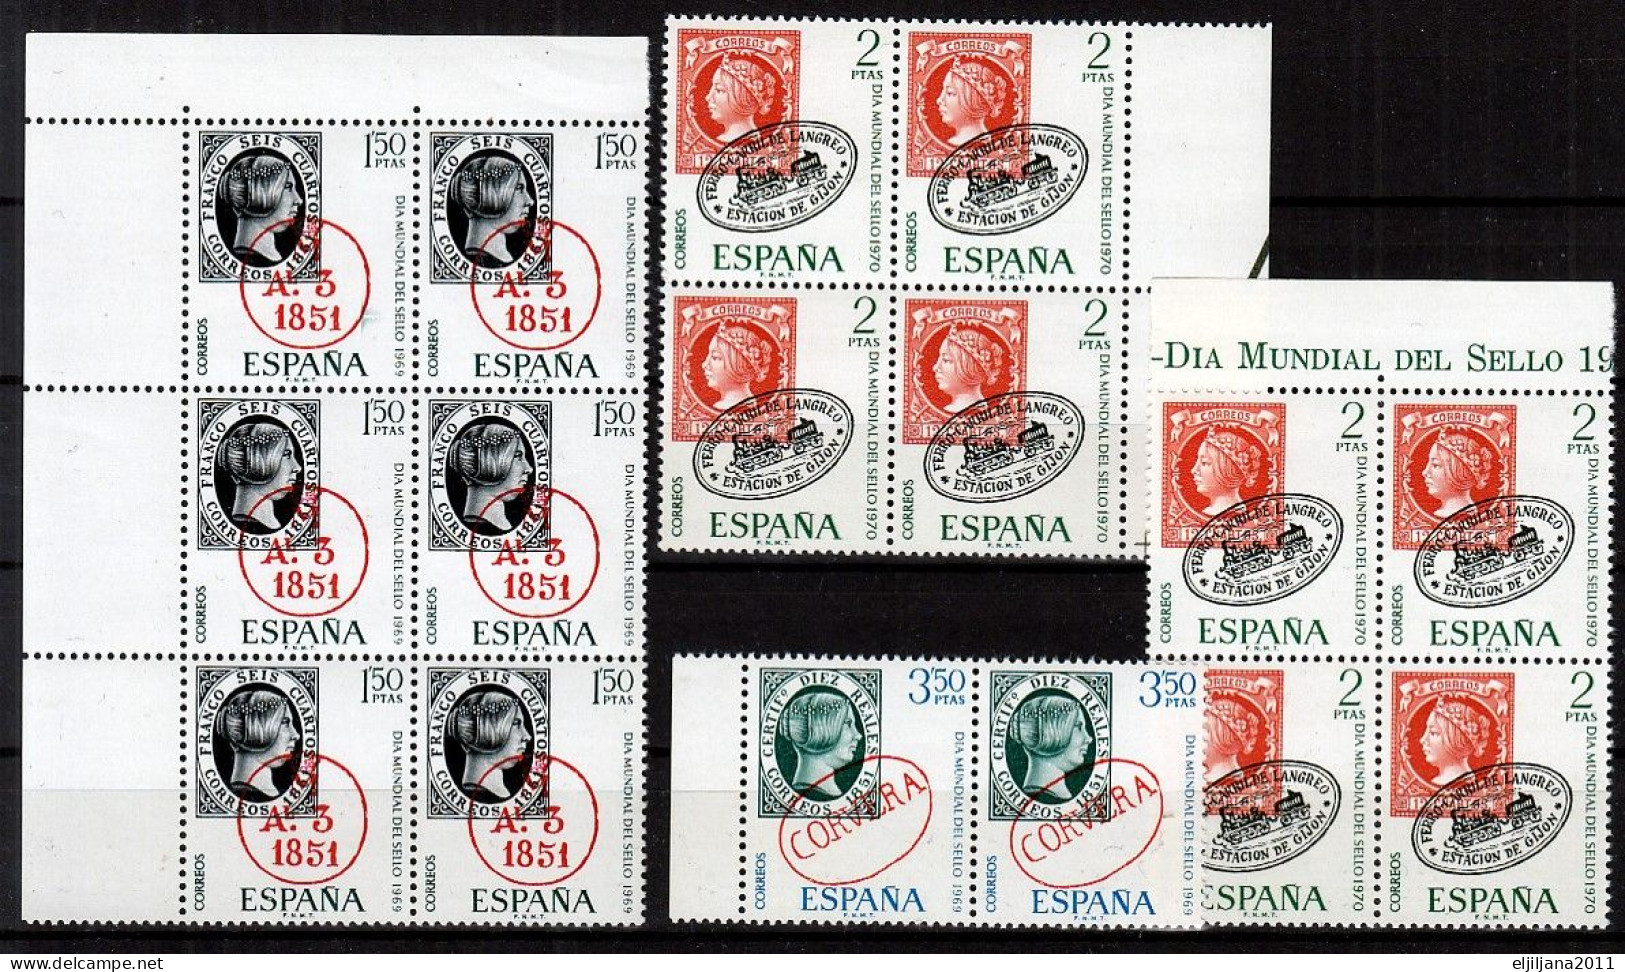 ⁕ SPAIN / ESPANA 1969 - 1970 ⁕ World Stamp Day Mi.1809/10 & Mi.1861 ⁕ 16v MNH - Nuovi